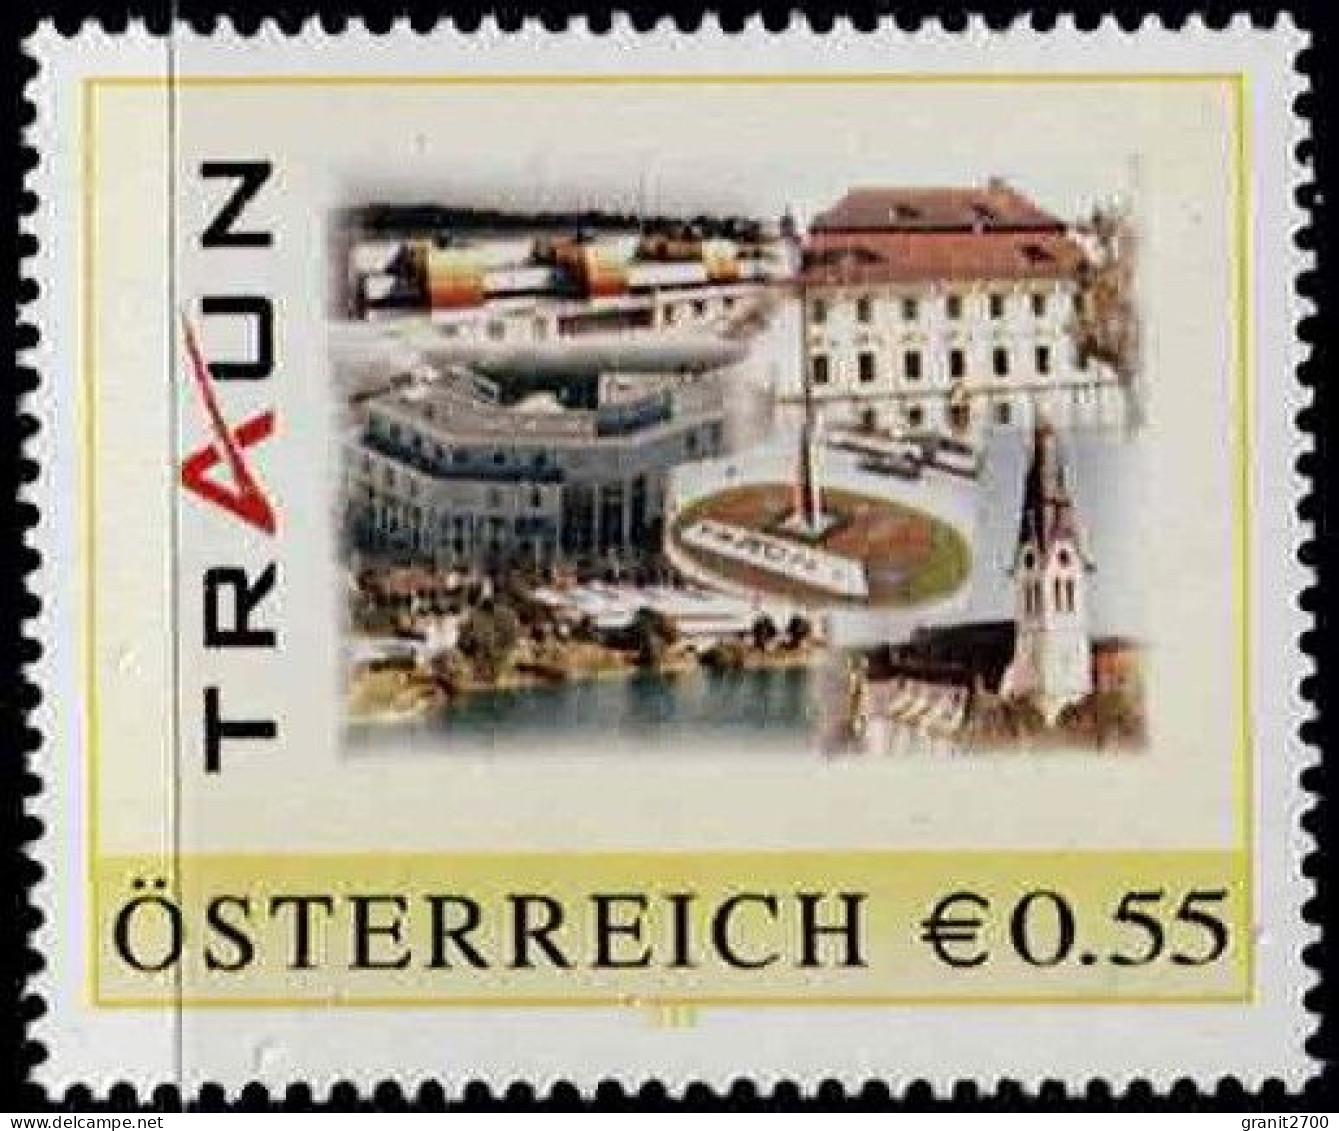 PM Sondermarke Der Stadt Traun  Ex Bogen Nr. 8006664  Postfrisch - Persoonlijke Postzegels